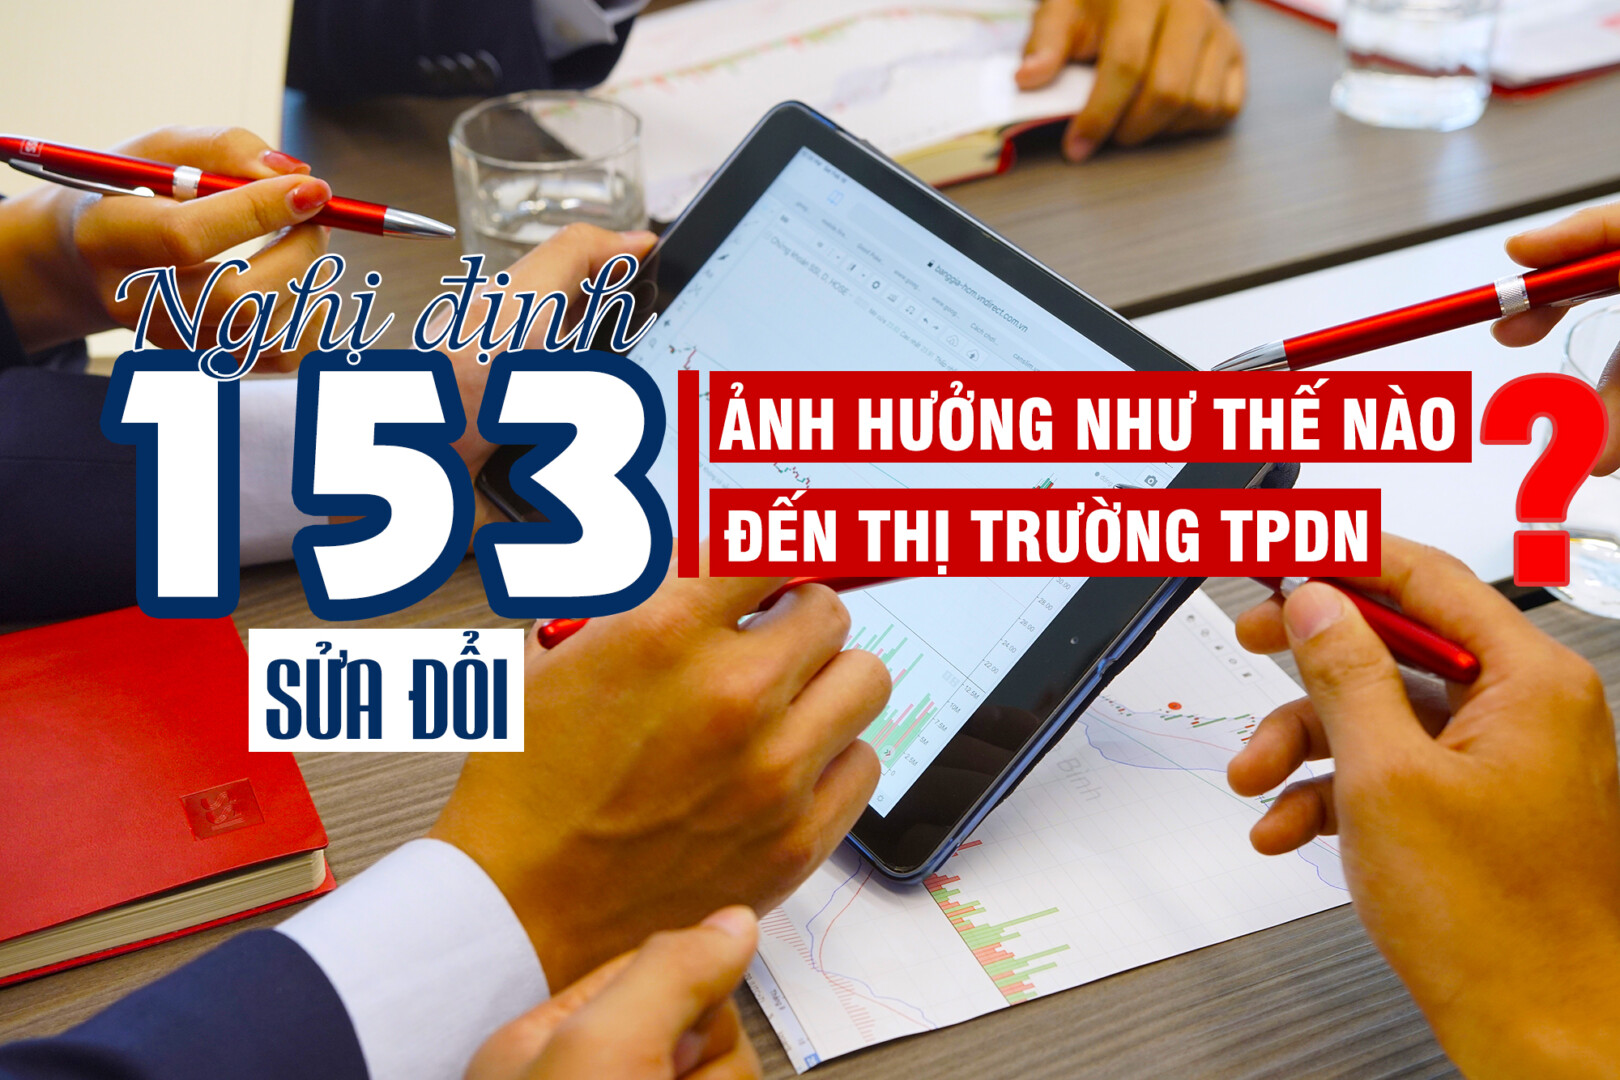 Nghi-dinh-153-sua-doi-anh-huong-nhu-the-nao-den-thi-truong-trai-phieu-doanh-nghiep